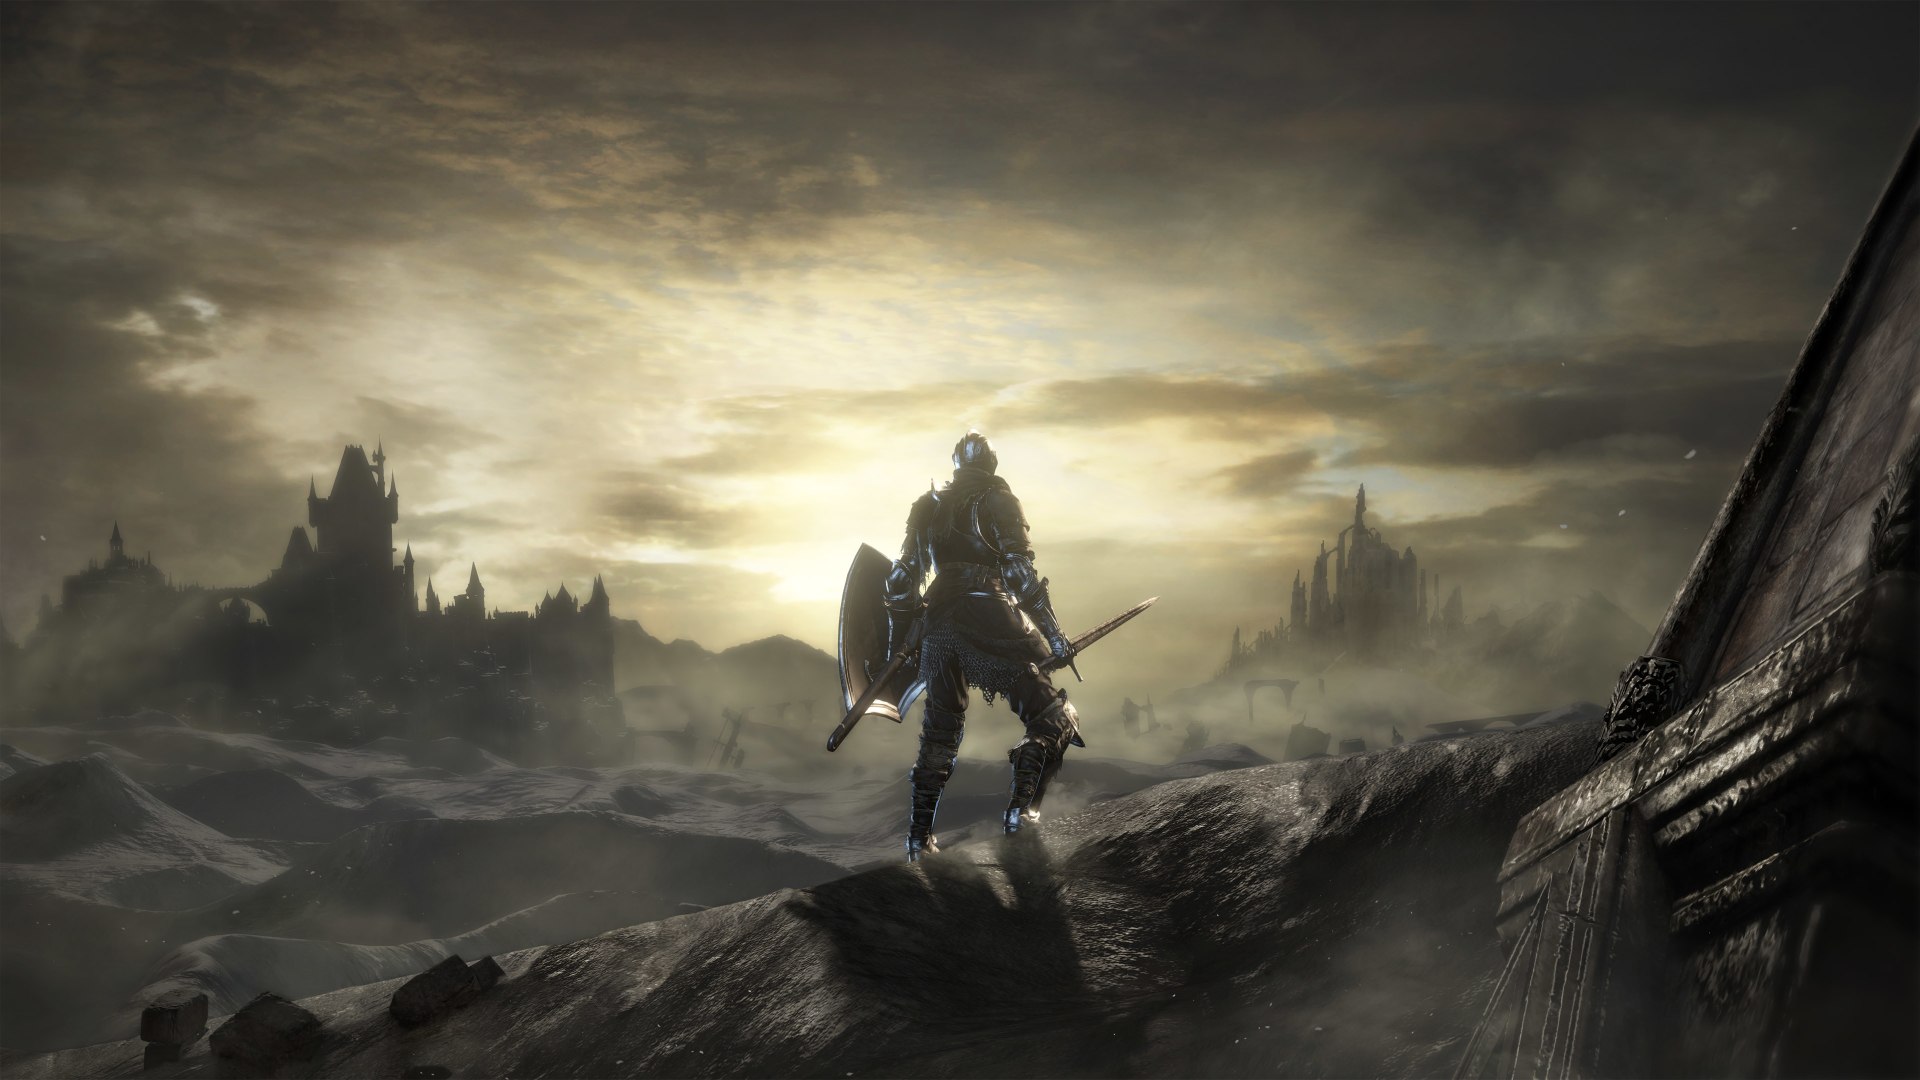 چگونه بازی Dark Souls نوع جدیدی از روایت داستان را خلق کرد؟